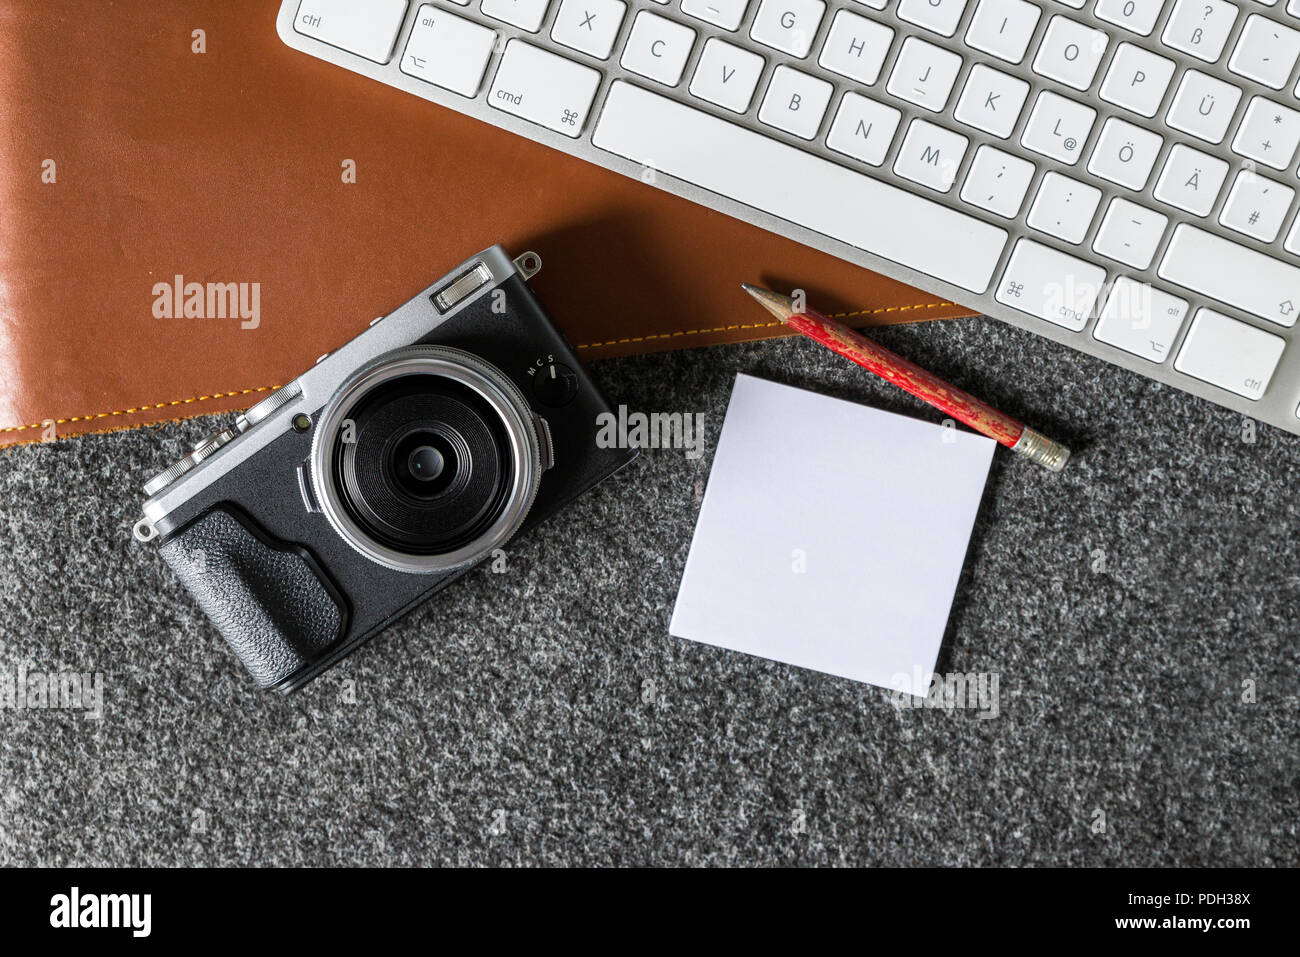 Schreibtisch mit Computer Tastatur und Kamera Auslenkung Arbeitsumgebung als Fotograf mit Leerzeichen auf Papier Seite als Flach Vorlage aus Stockfoto